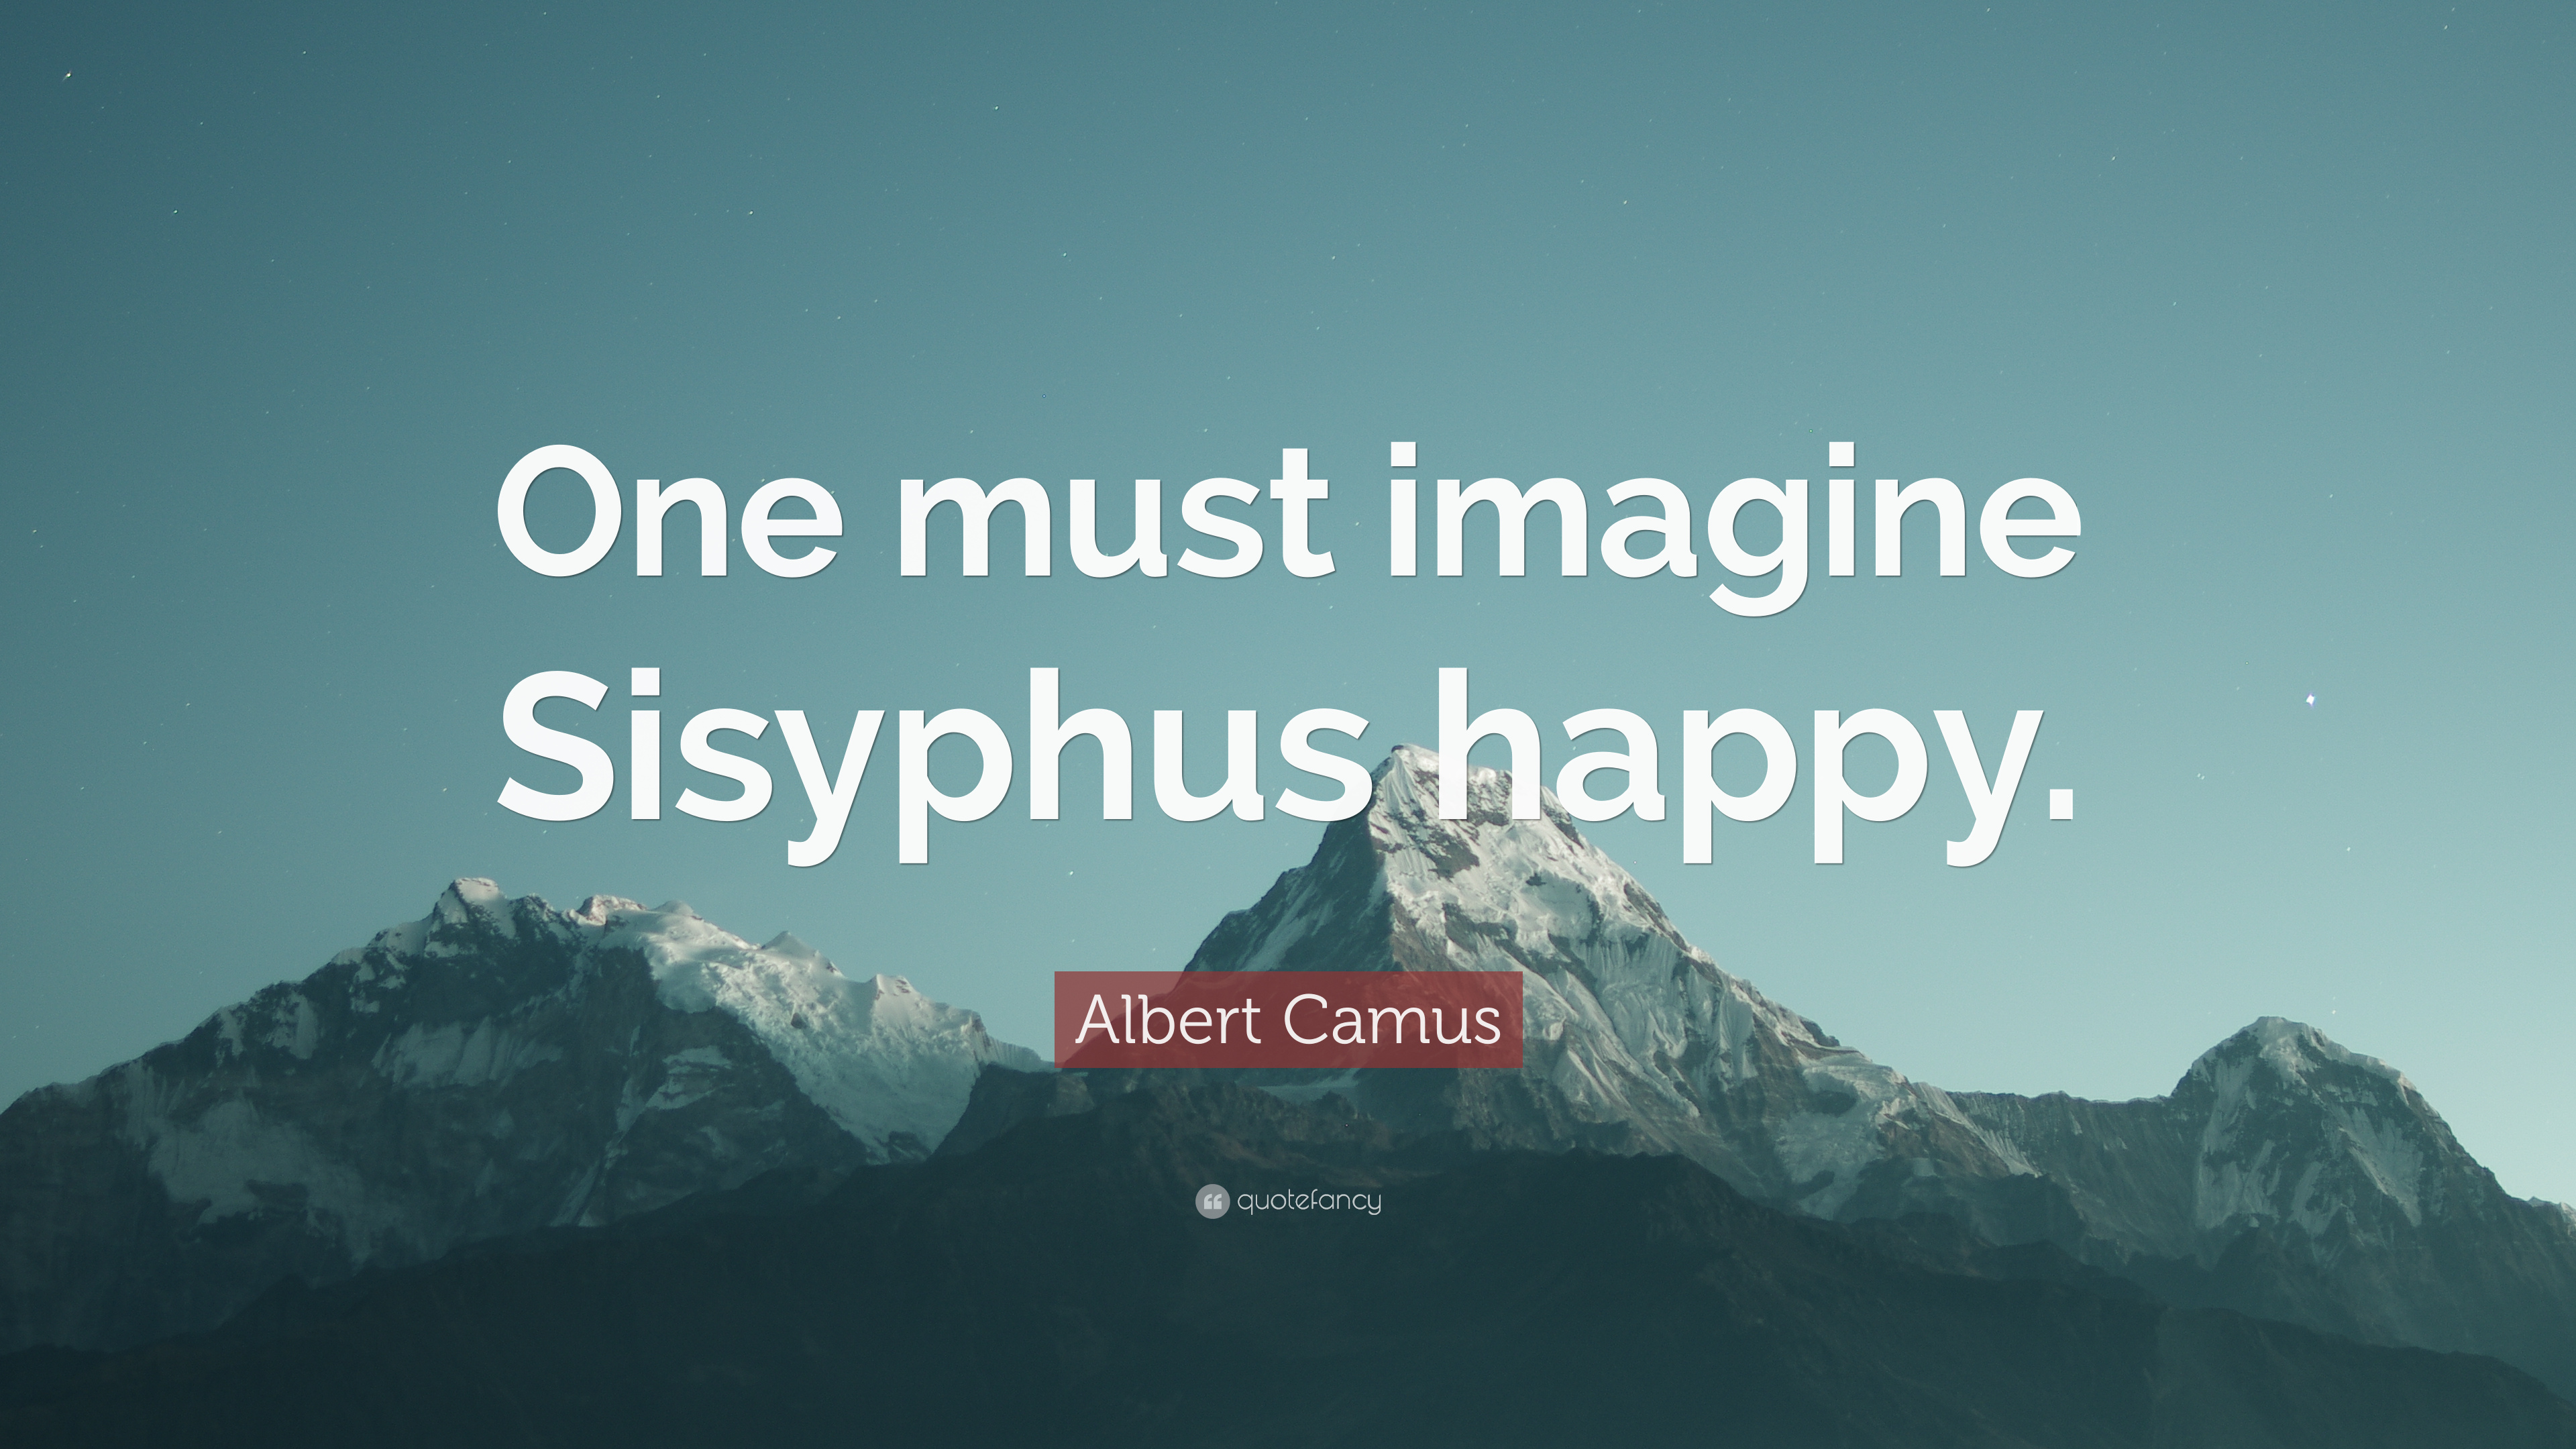 Albert Camus Quote: “One must imagine Sisyphus happy.”